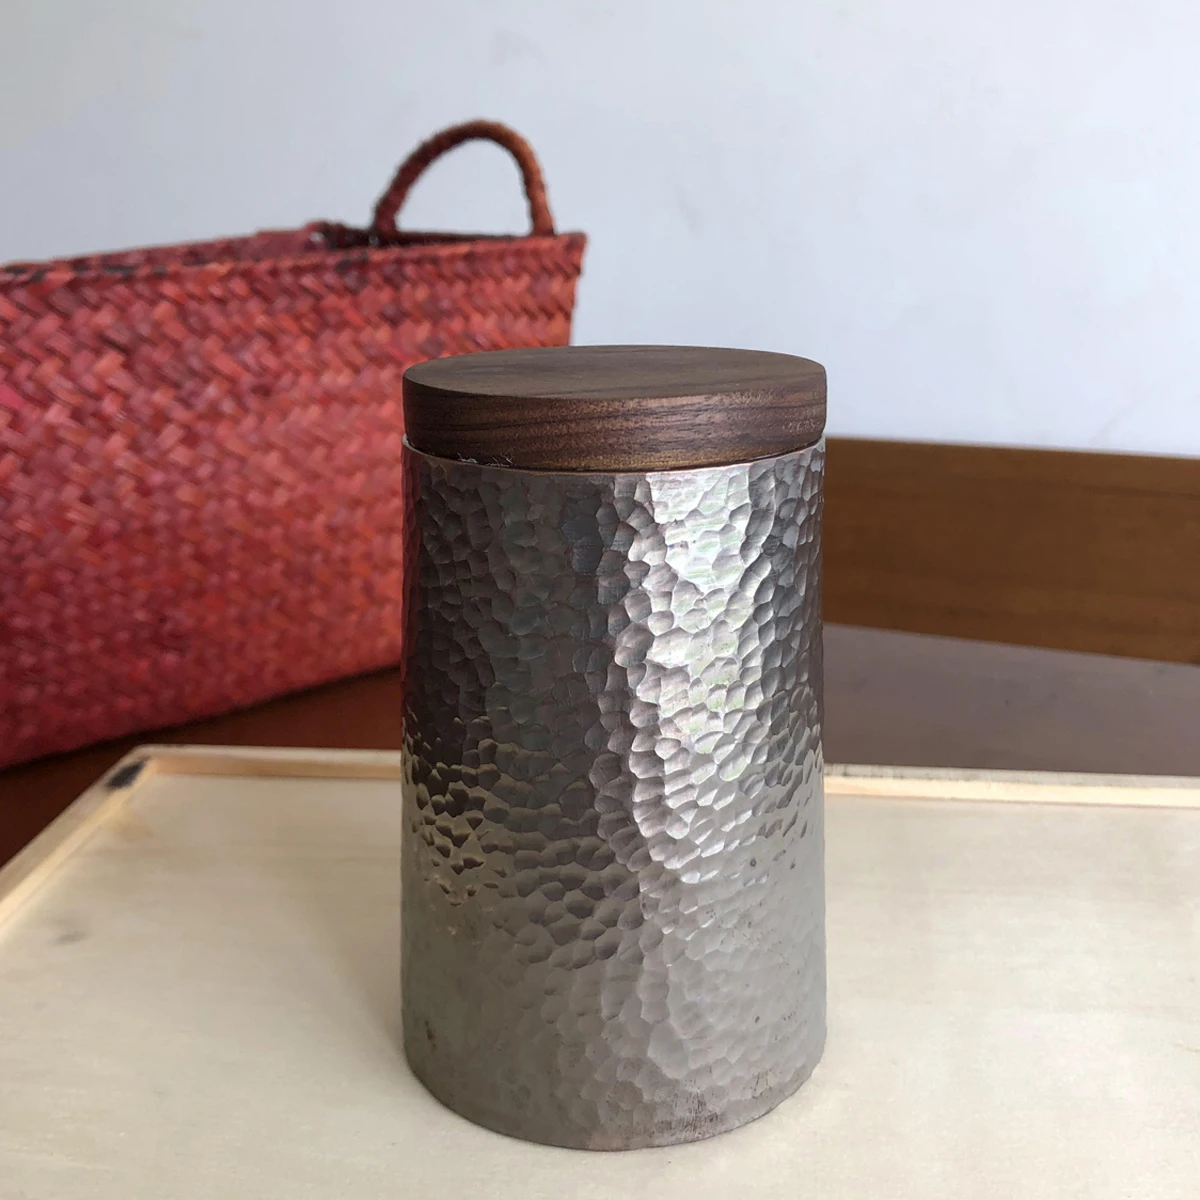 ทองแดงบริสุทธิ์ Jar ปิดผนึกคอนเทนเนอร์ชากาแฟ Handcrafted Hammered กล่องเก็บวอลนัทฝากระป๋อง